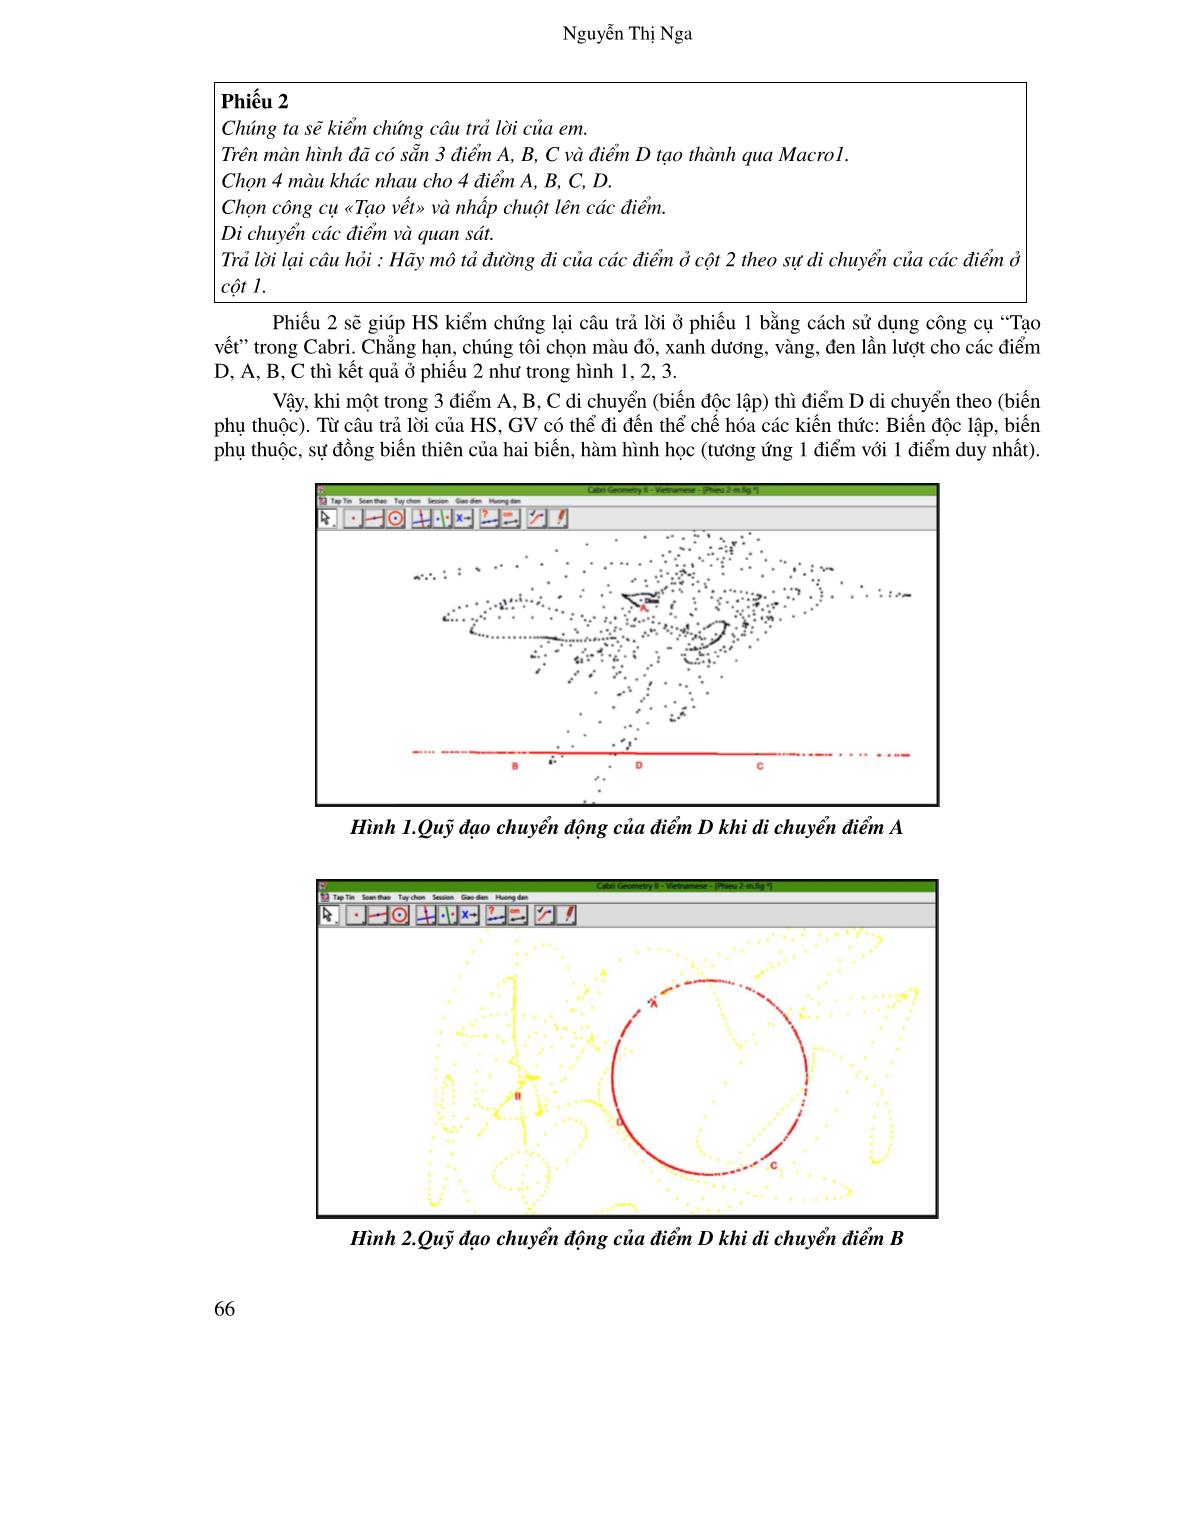 Tiềm năng và ưu điểm của phần mềm hình học động Cabri Geometry trong dạy học toán: Trường hợp dạy học khái niệm hàm số trang 7